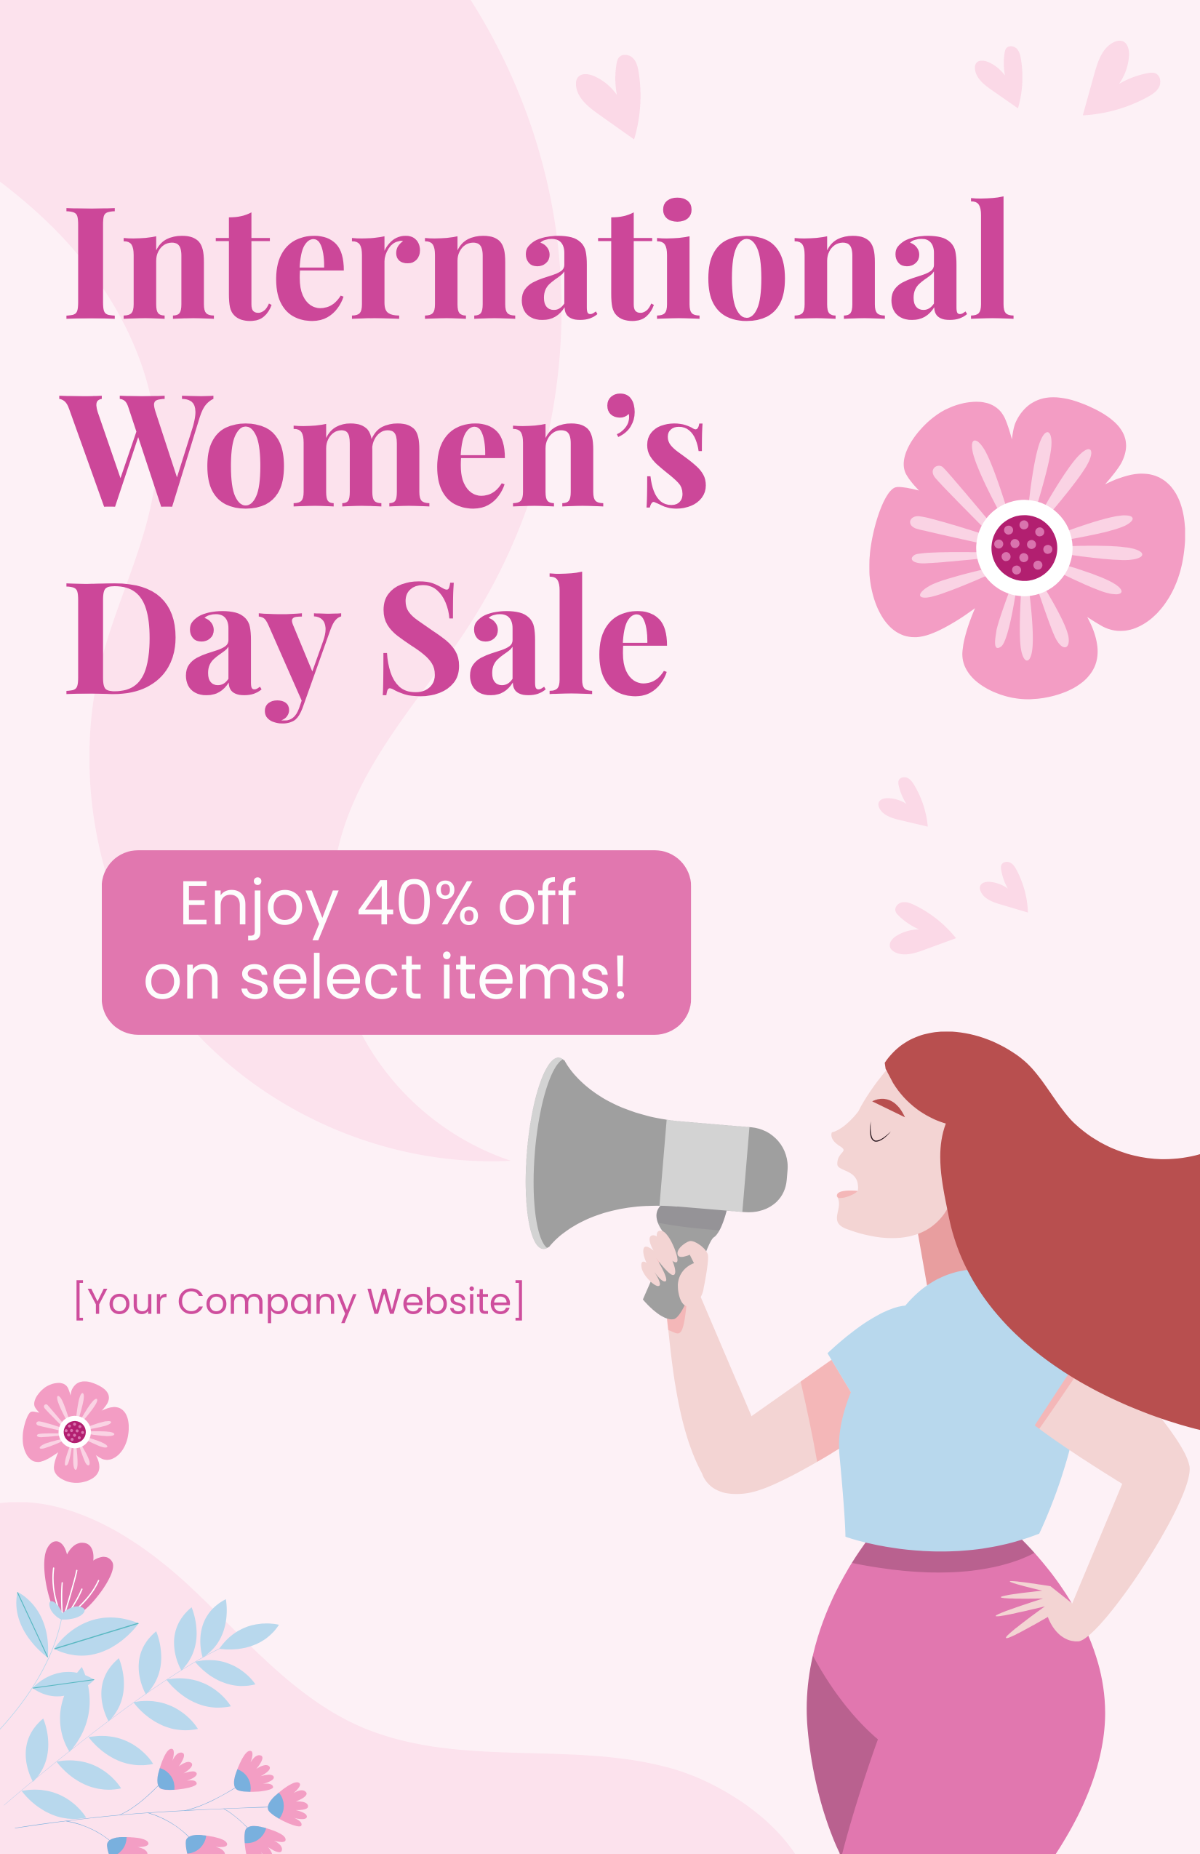 International Women's Day Sale